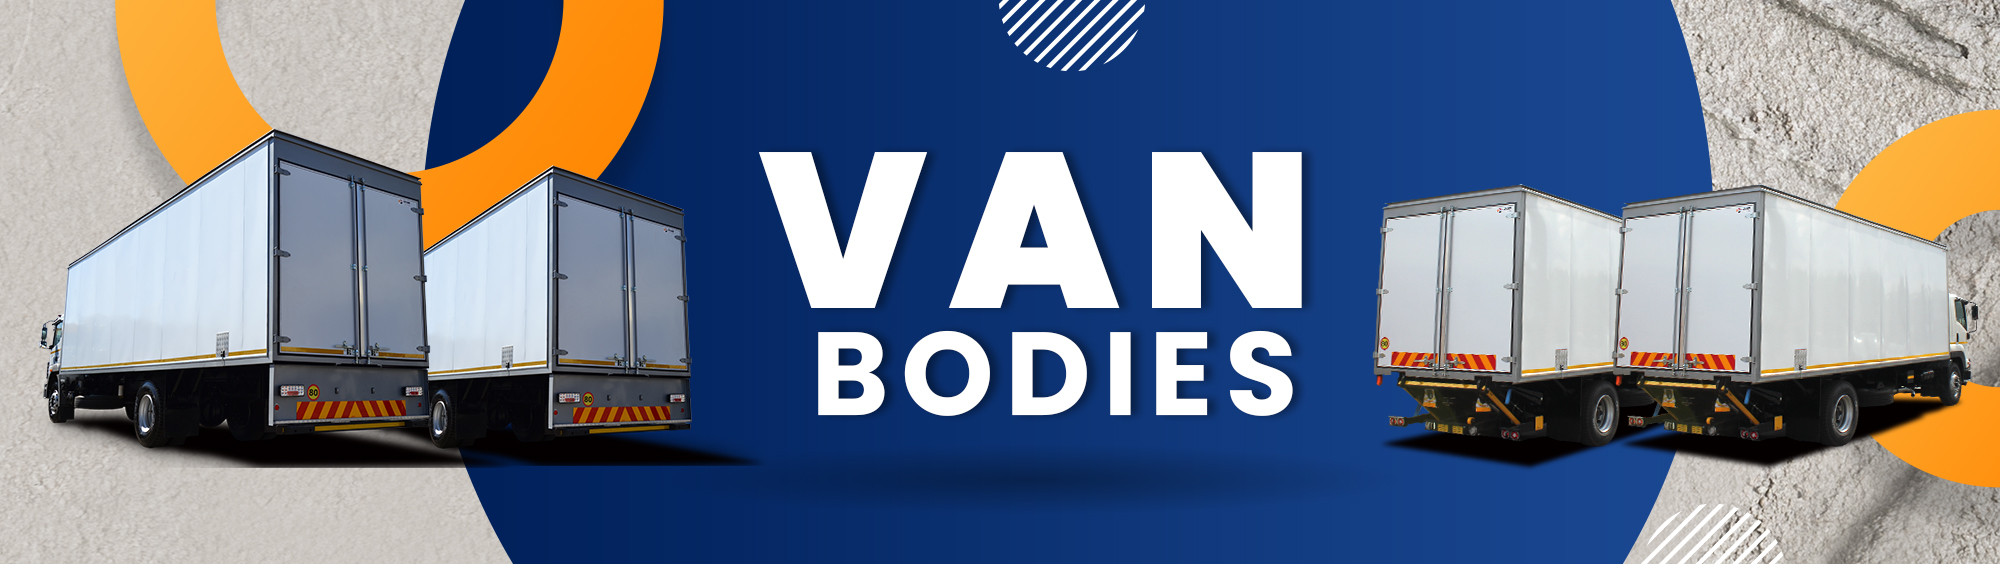 Van Bodies